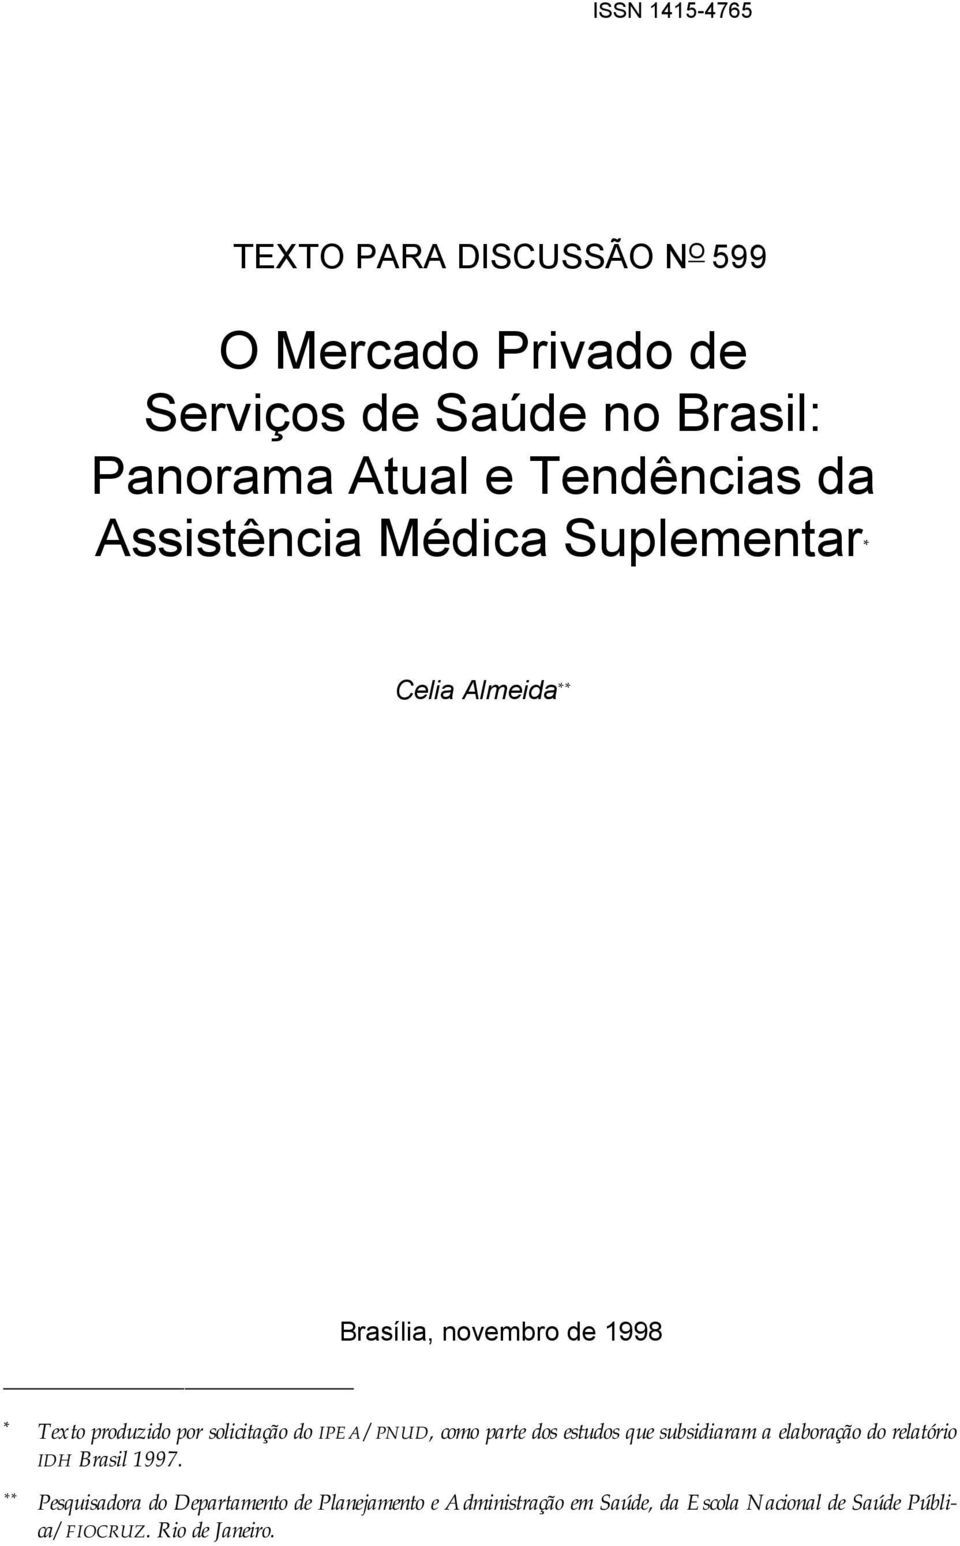 solicitação do IPEA/PNUD, como parte dos estudos que subsidiaram a elaboração do relatório IDH Brasil 1997.